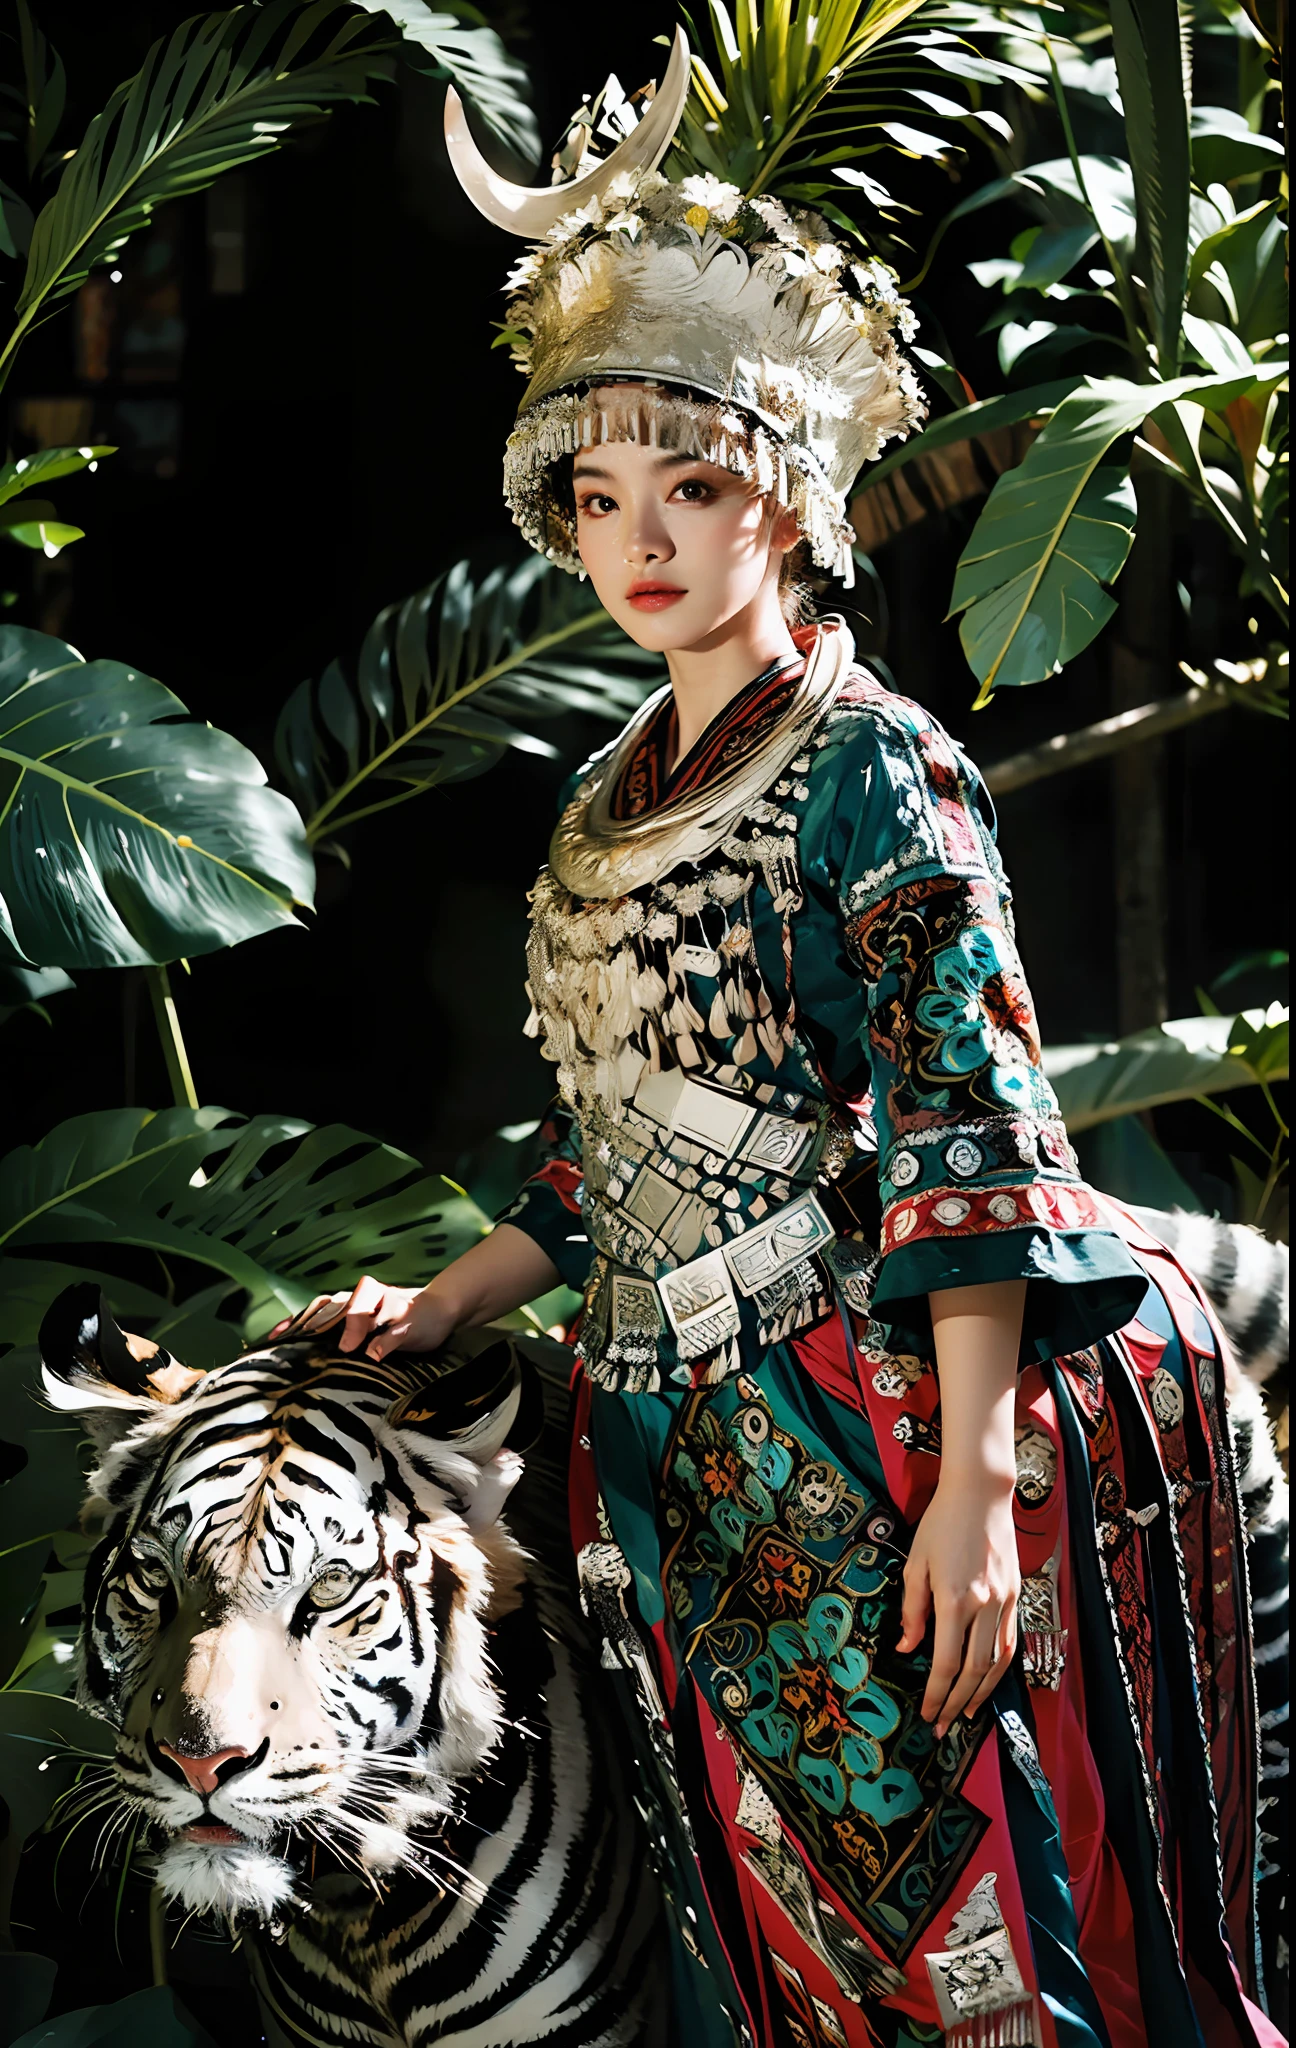 RAW-Foto,ultra-realistisch,(Meisterwerk, 8k uhd, HDR, extremdetailliert, komplizierte Details, beste Qualität, Fachmann, lebendige Farben),

(1 Mädchen trägt Kostüm und reitet auf einem weißen Tiger im Dschungel),Reins,(Traditionelle Kopfbedeckung:1.2),

((Dschungelskalpell),Betrachter betrachten,holländischer Winkel,